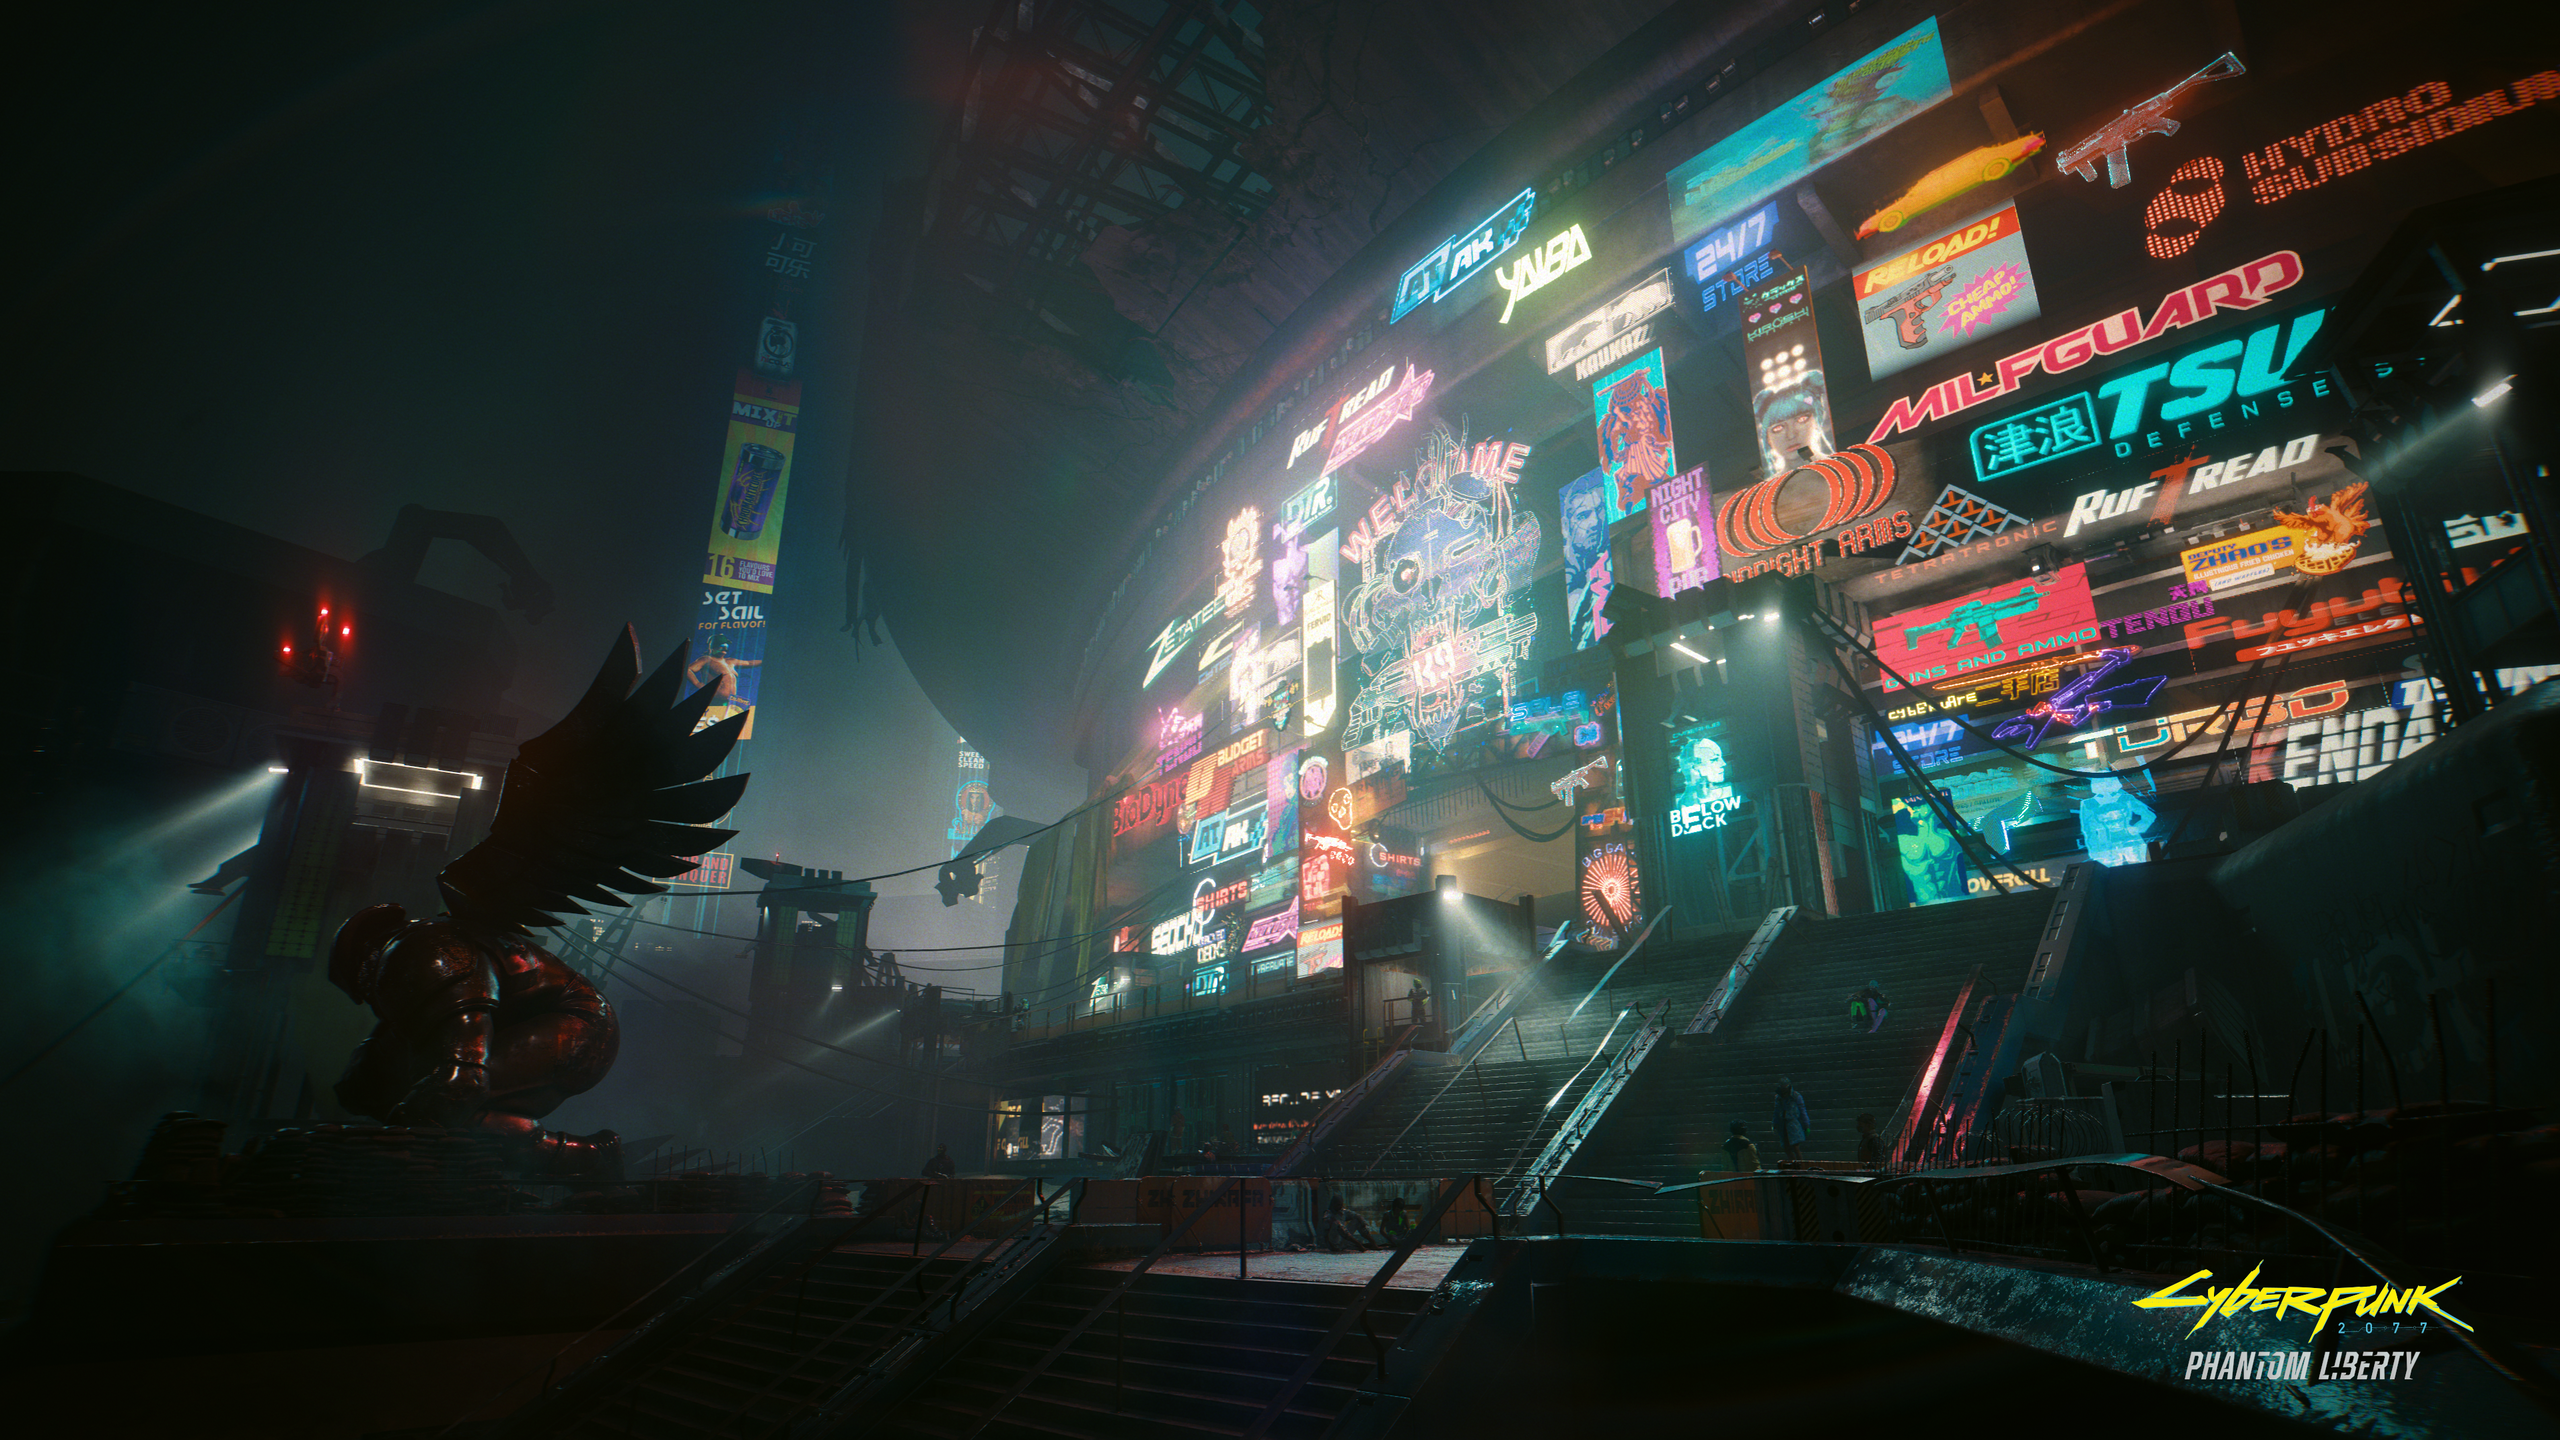 Cyberpunk 2077: Phantom Liberty vem com o “V”erdadeiro